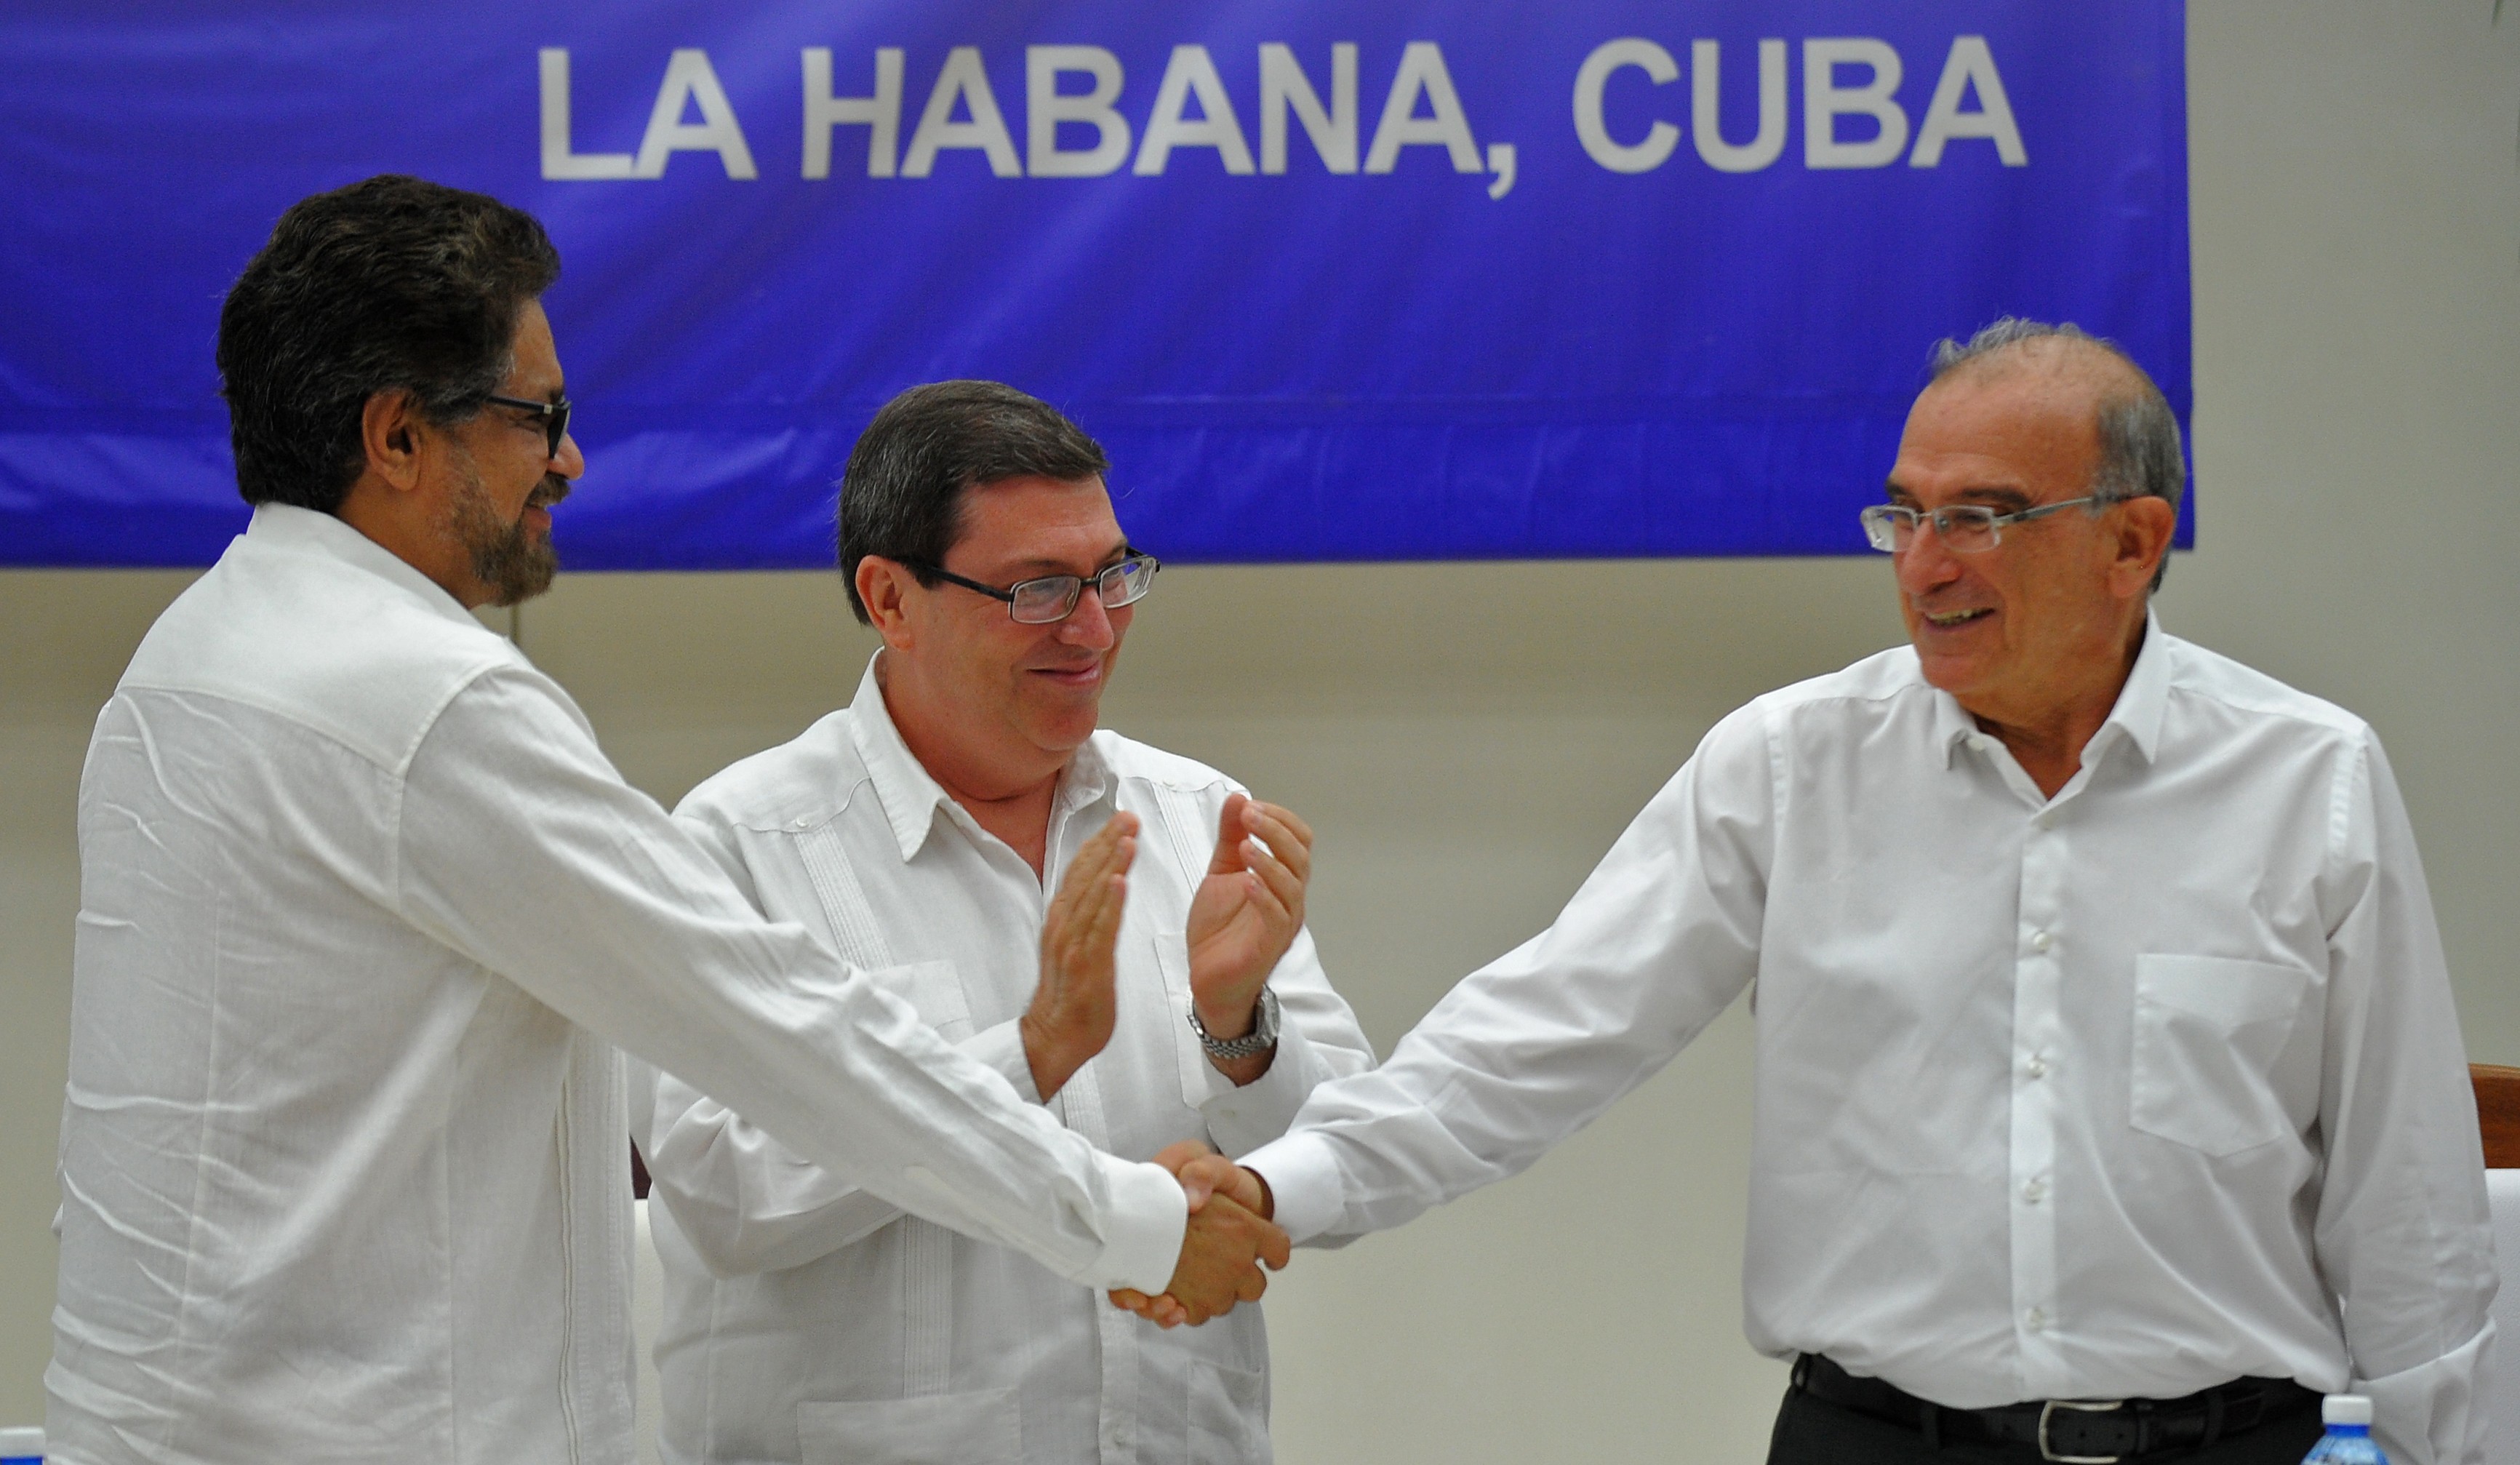 O comandante das Farc Iván Marquéz (esquerda) e o chefe da delegação de paz colombiana Humberto de la Calle (direita) apertam as mãos nesta quarta-feira (24) em Havana, Cuba, após assinarem o acordo definitivo de paz na Colômbia (Foto: YAMIL LAGE / AFP)